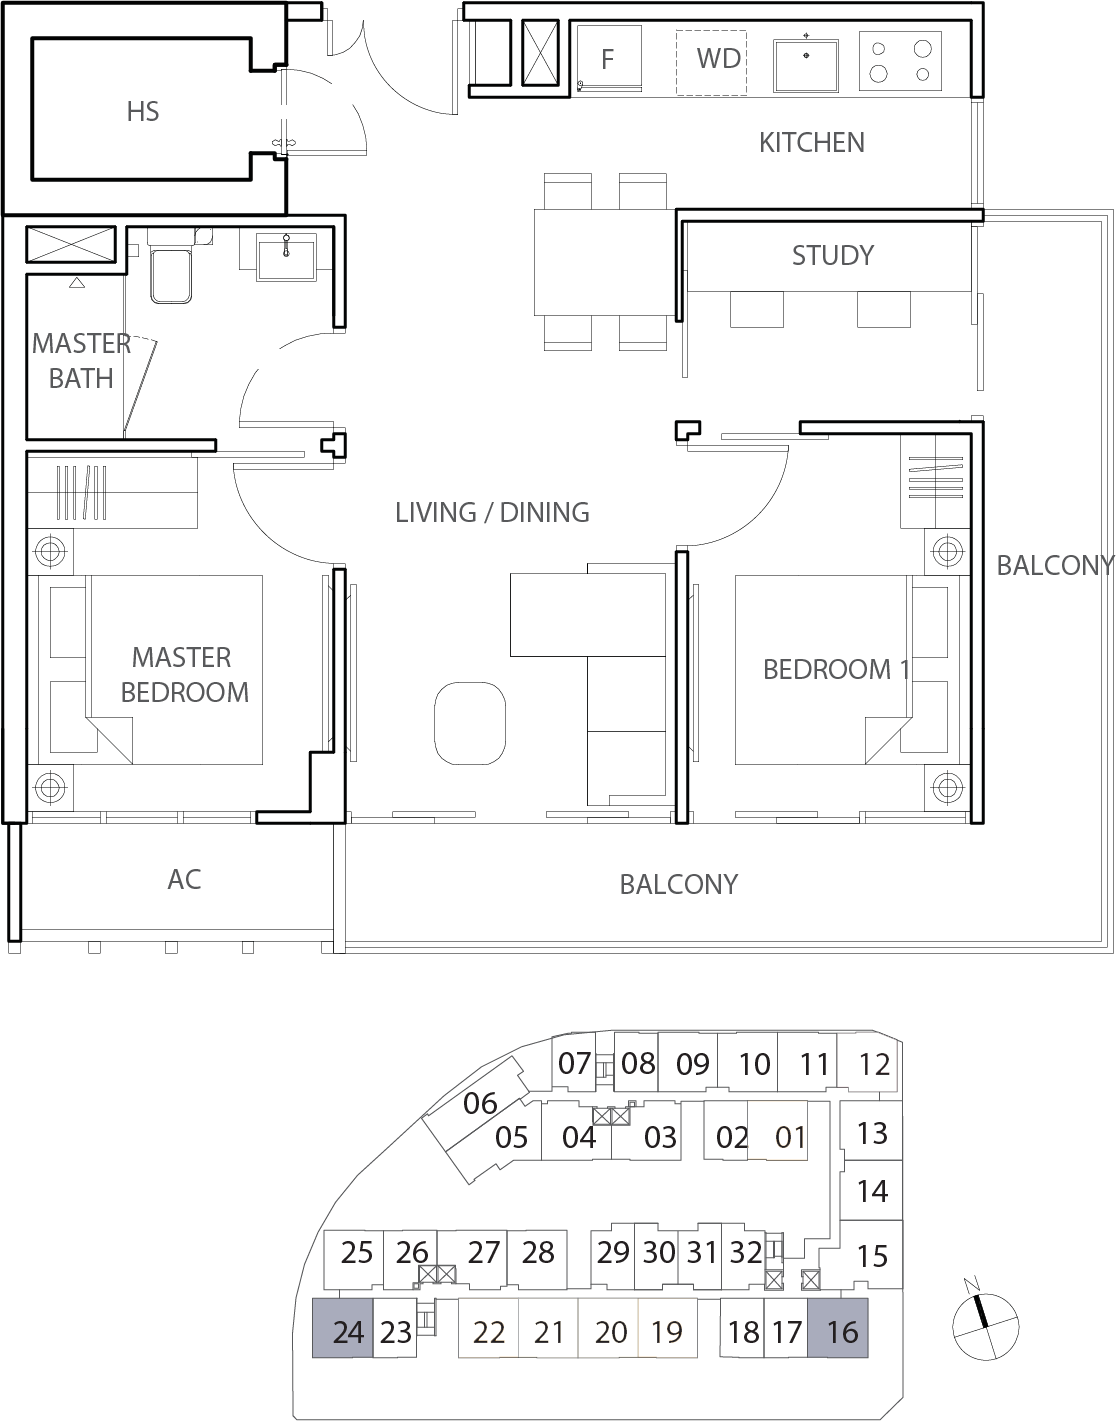 Floor Plan for Residential Type B6